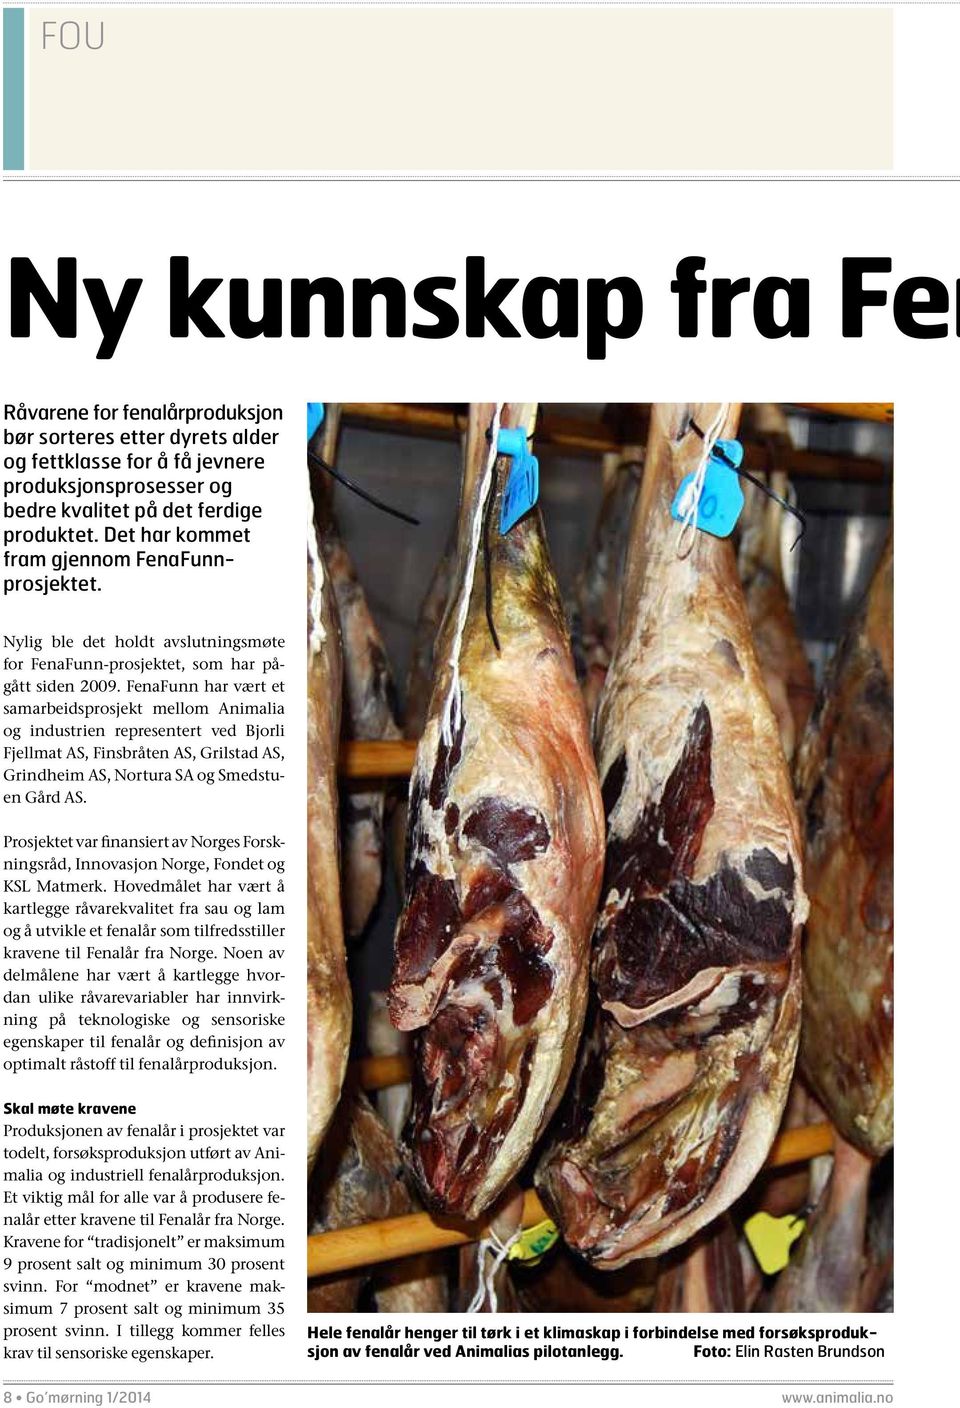 FenaFunn har vært et samarbeidsprosjekt mellom Animalia og industrien representert ved Bjorli Fjellmat AS, Finsbråten AS, Grilstad AS, Grindheim AS, Nortura SA og Smedstuen Gård AS.